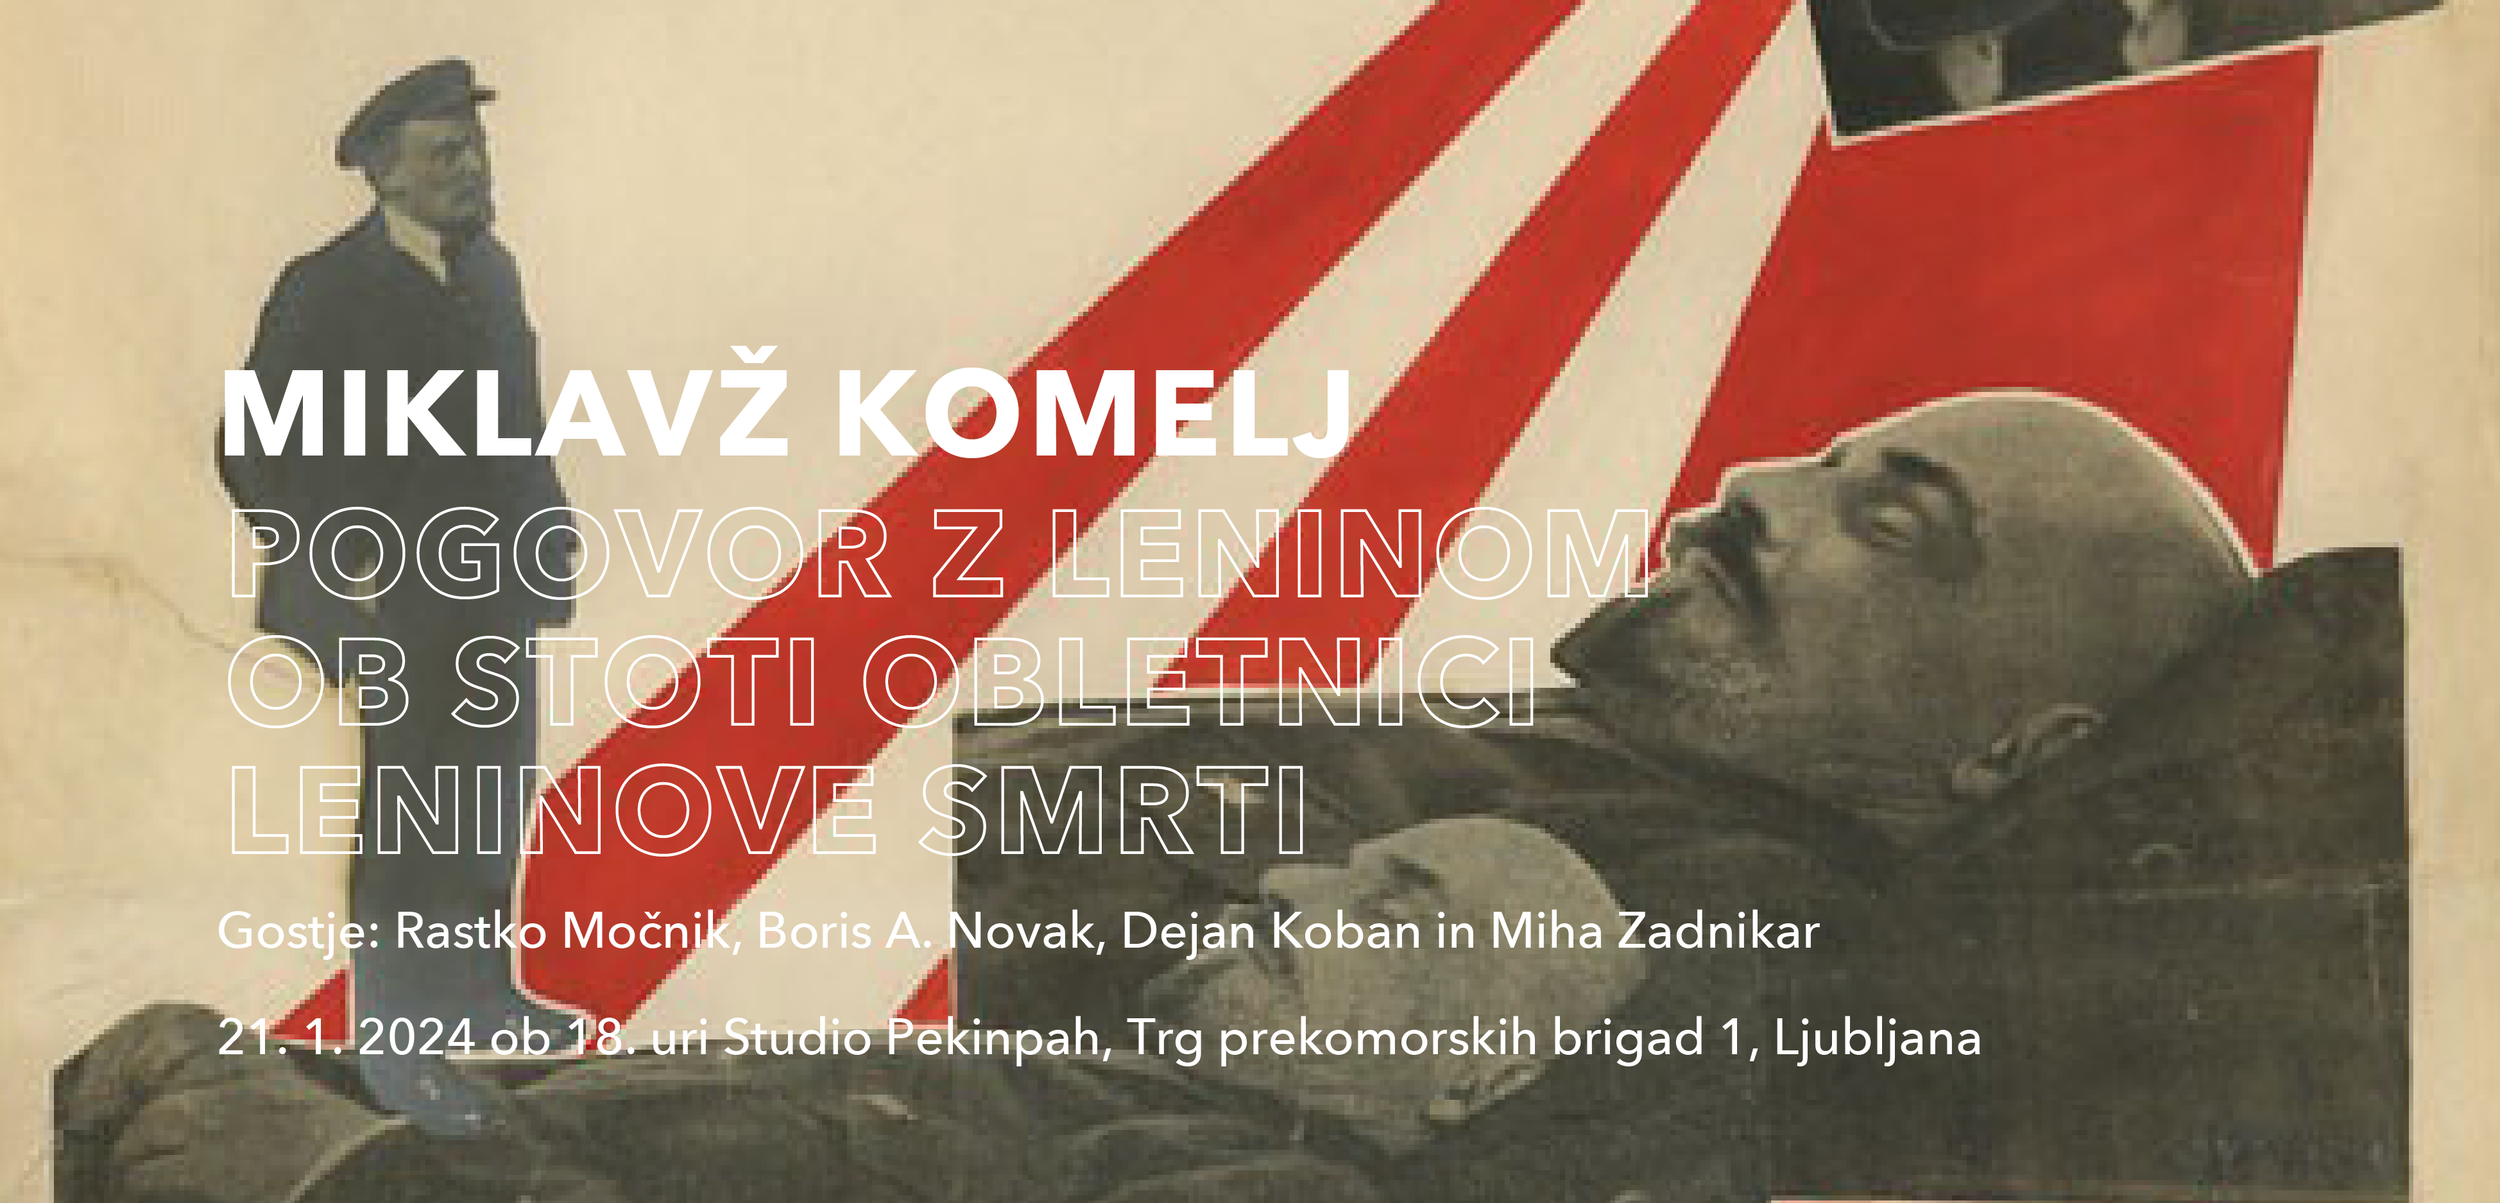 M.Komelj_LENIN_web_cover-01.png